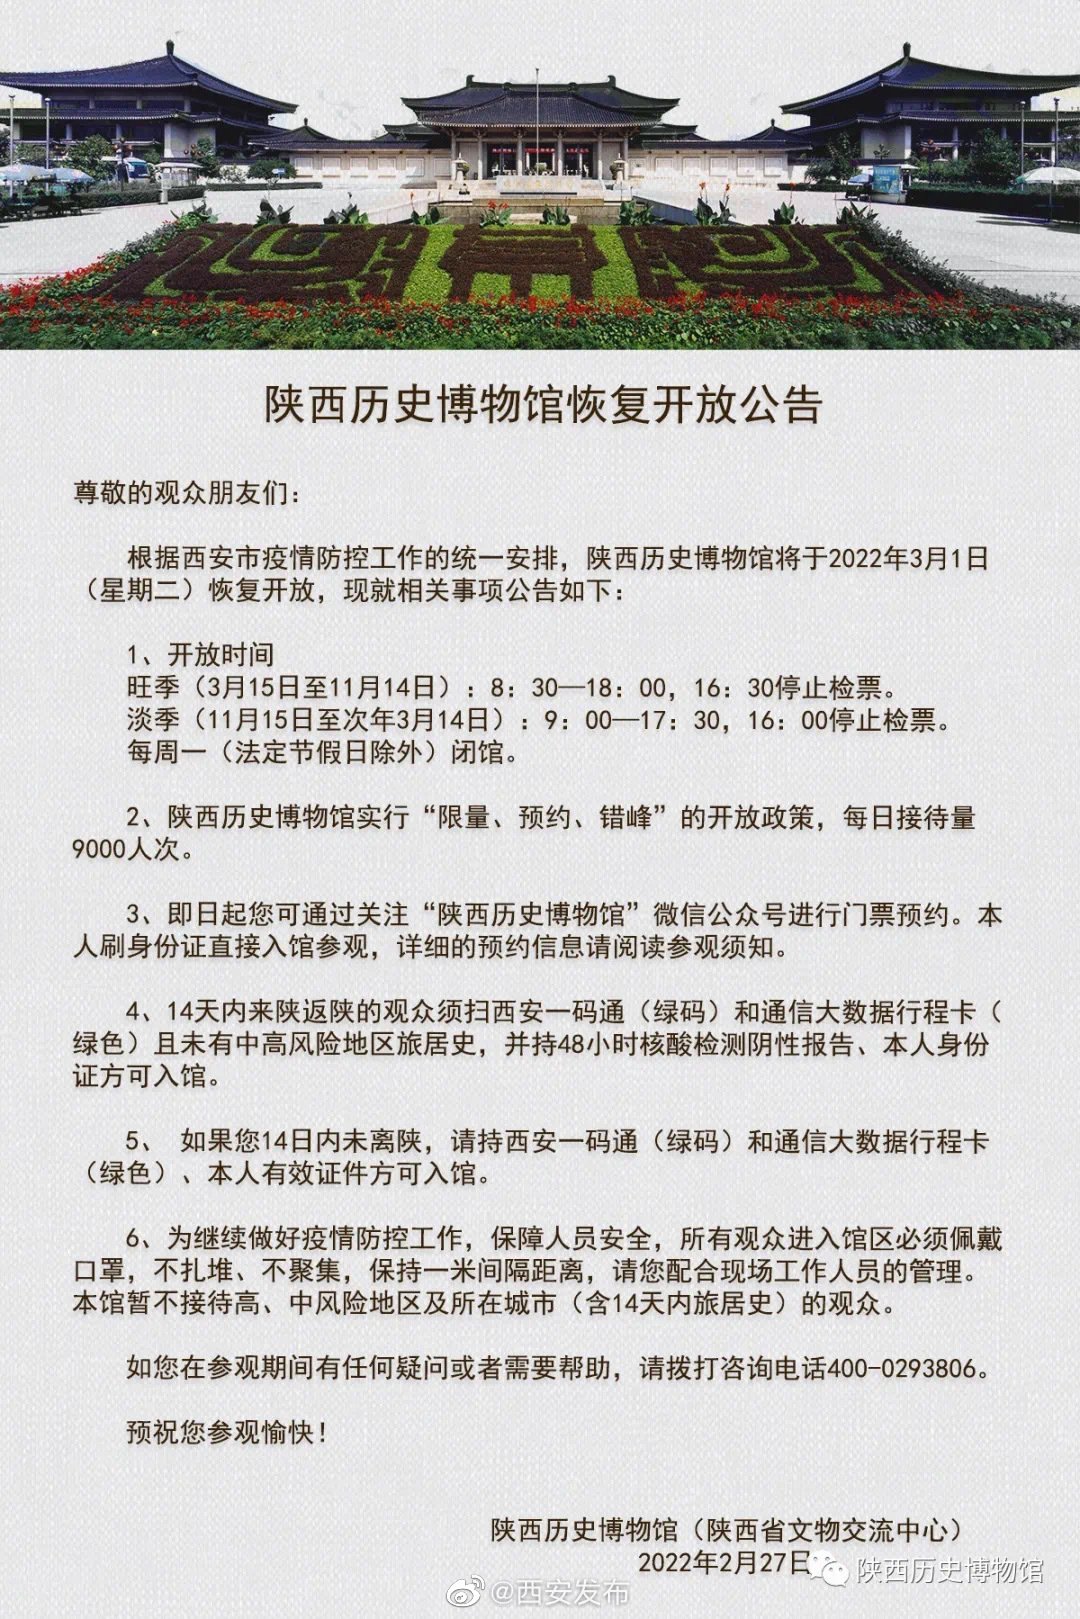 陕西历史博物馆|陕西历史博物馆3月1日起恢复开放